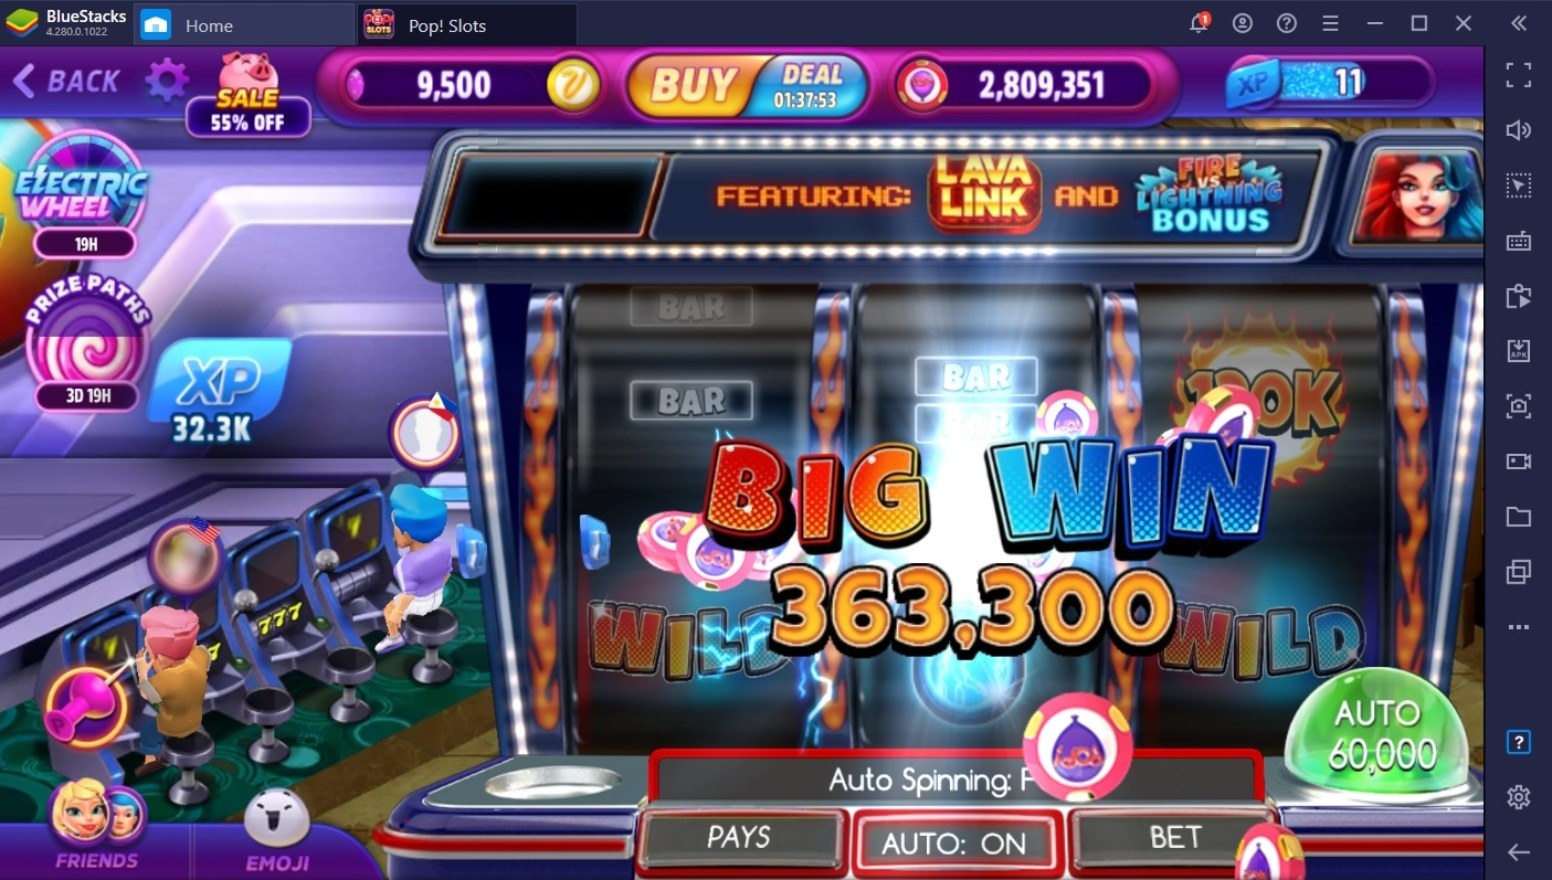 如何使用BlueStacks在電腦上玩 「POP! Slots Vegas Casino Games」